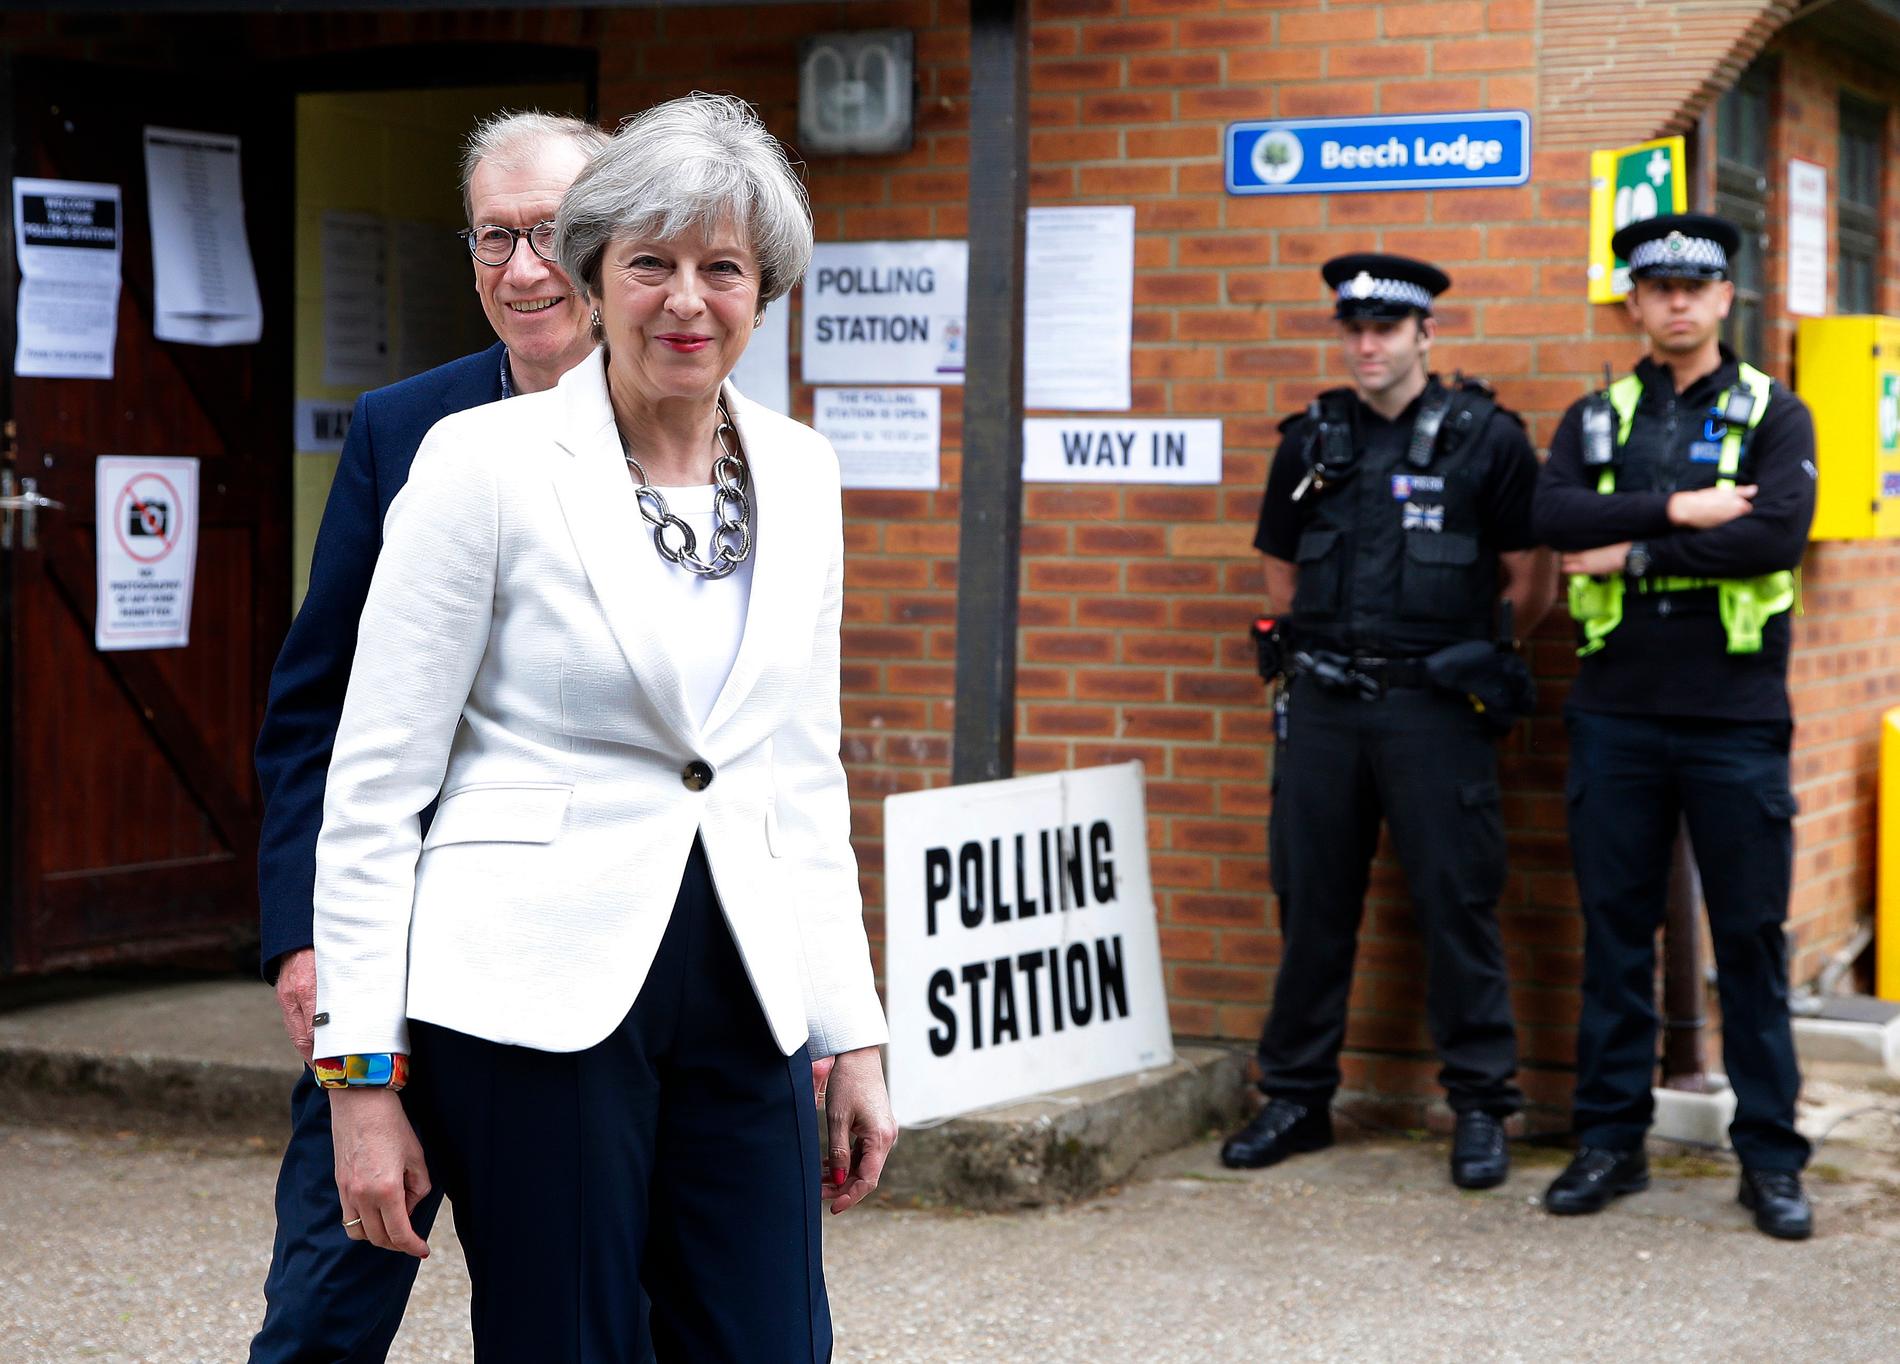 Primiärminister Theresa May med maken Philip efter att ha röstat i Maidenhead, England.